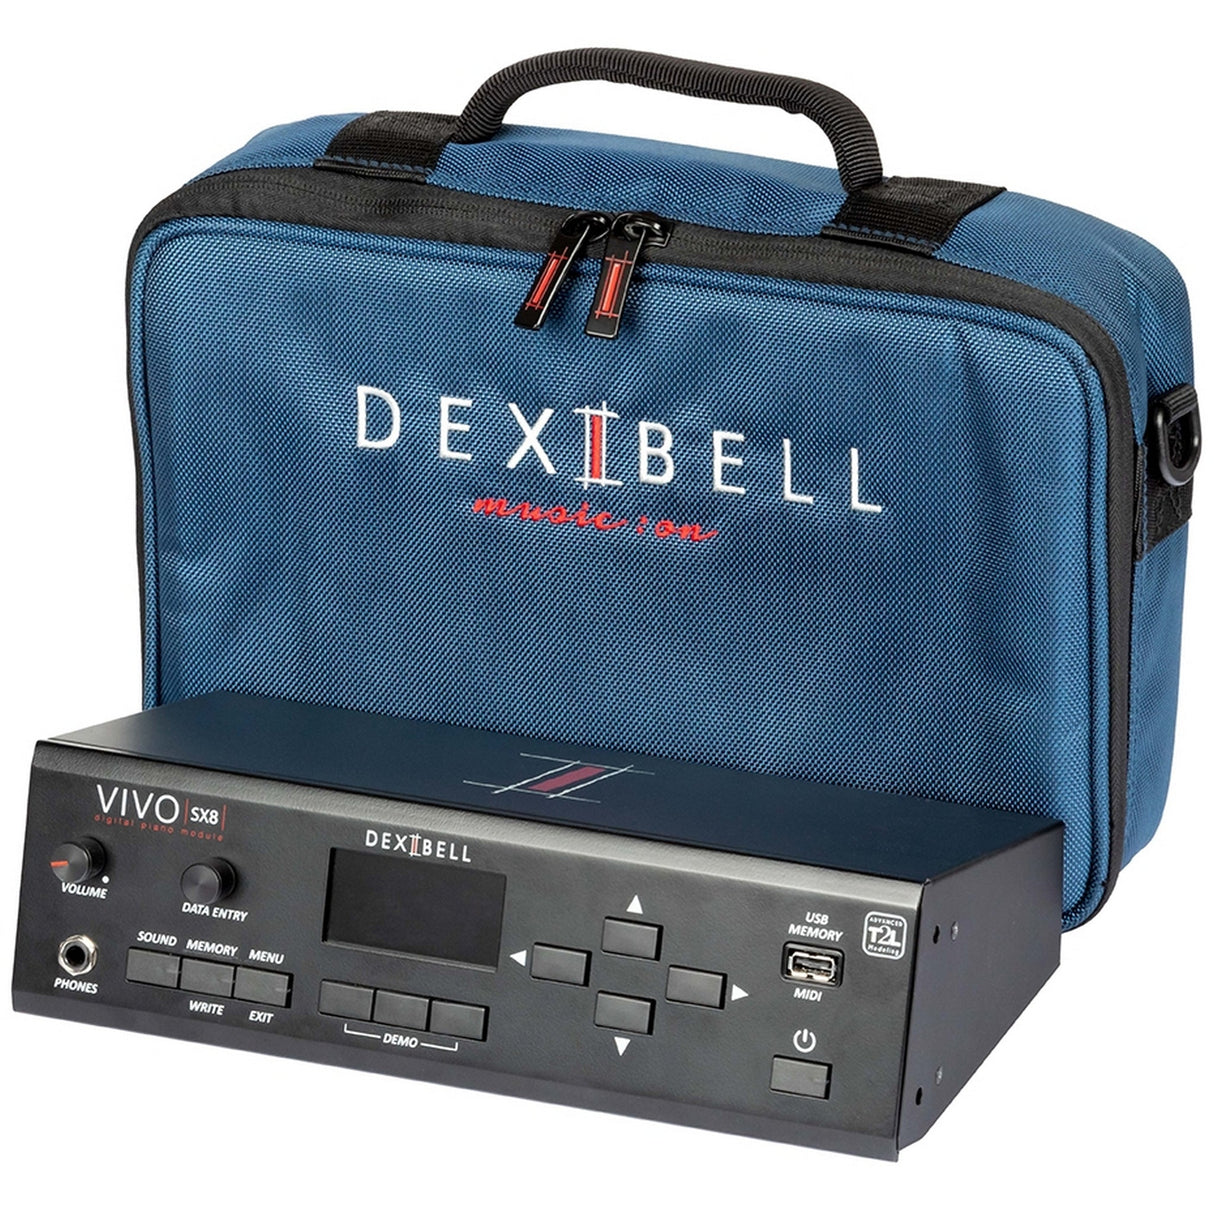 Dexibell VIVO SX8 Rackmountable and Desktop Sound Module